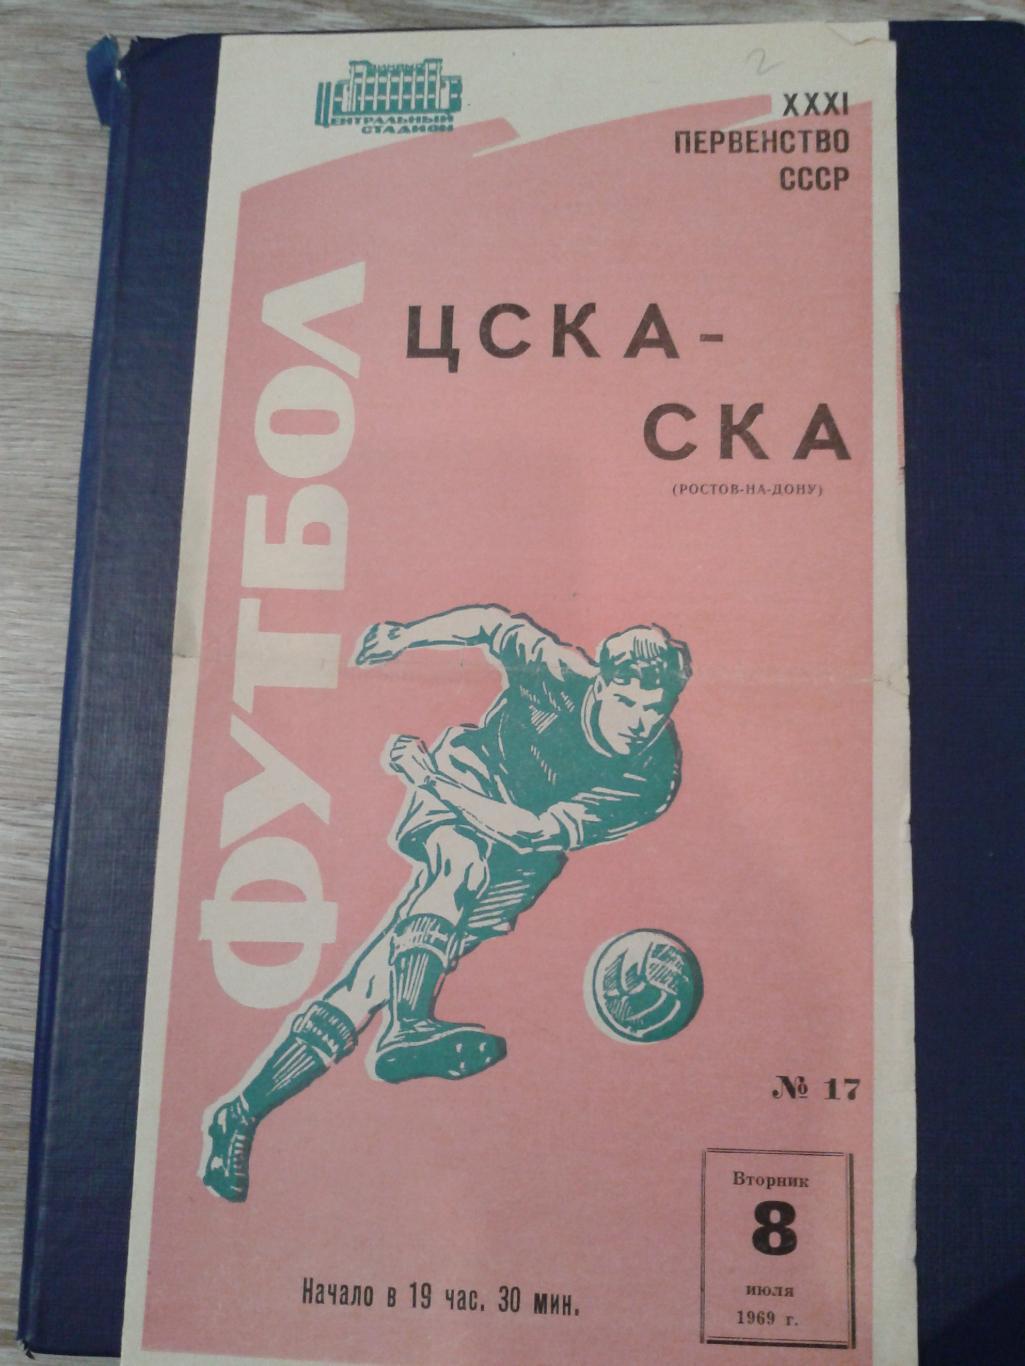 1969 ЦСКА-СКА Ростов